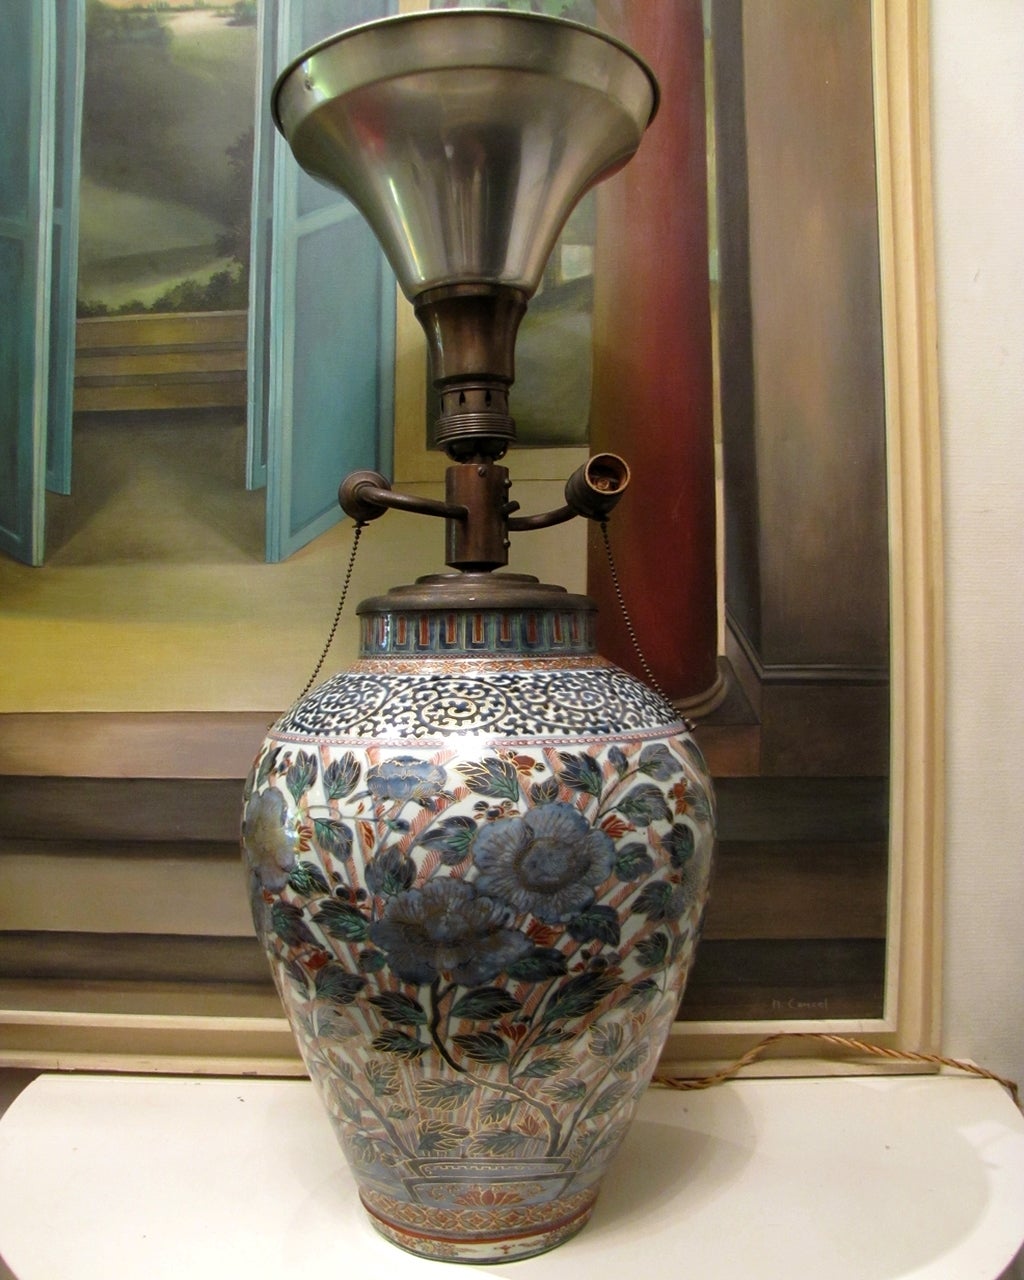 Sehr schöne und große Imari-Vase (Japan Ende des neunzehnten Jahrhunderts) Lampe montiert um 1950 mit einem Luminator-System.
Der Lampenschirm ruht auf einem Aluminiumkegel, der auch eine Glühbirne enthält. 
Die Vase ist nicht beschädigt oder